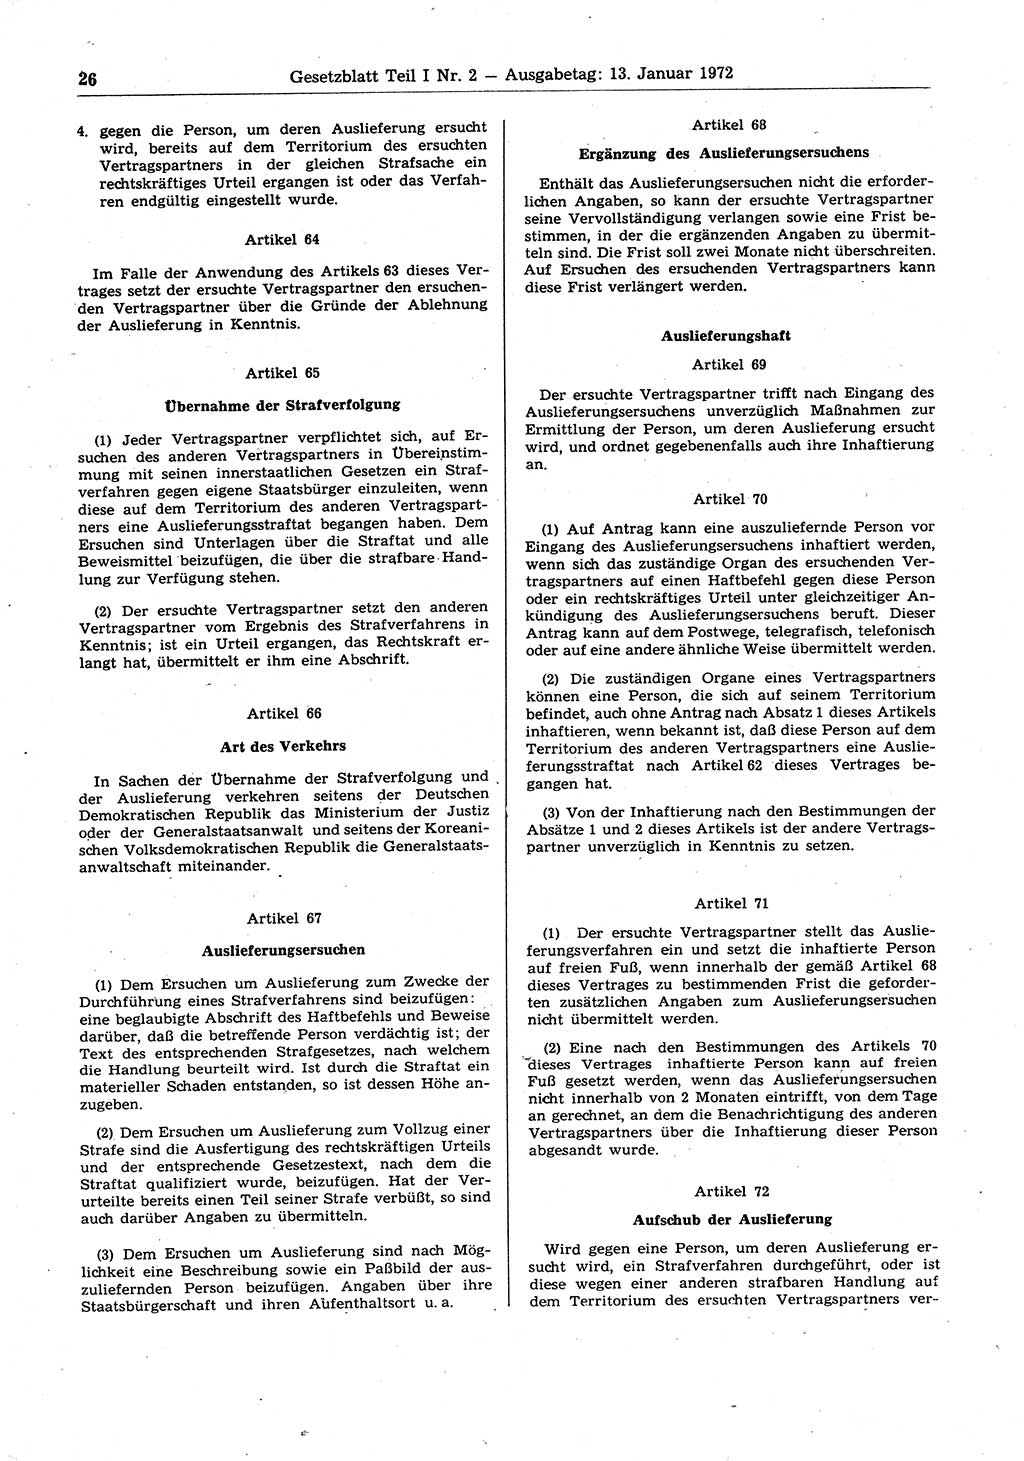 Gesetzblatt (GBl.) der Deutschen Demokratischen Republik (DDR) Teil Ⅰ 1972, Seite 26 (GBl. DDR Ⅰ 1972, S. 26)